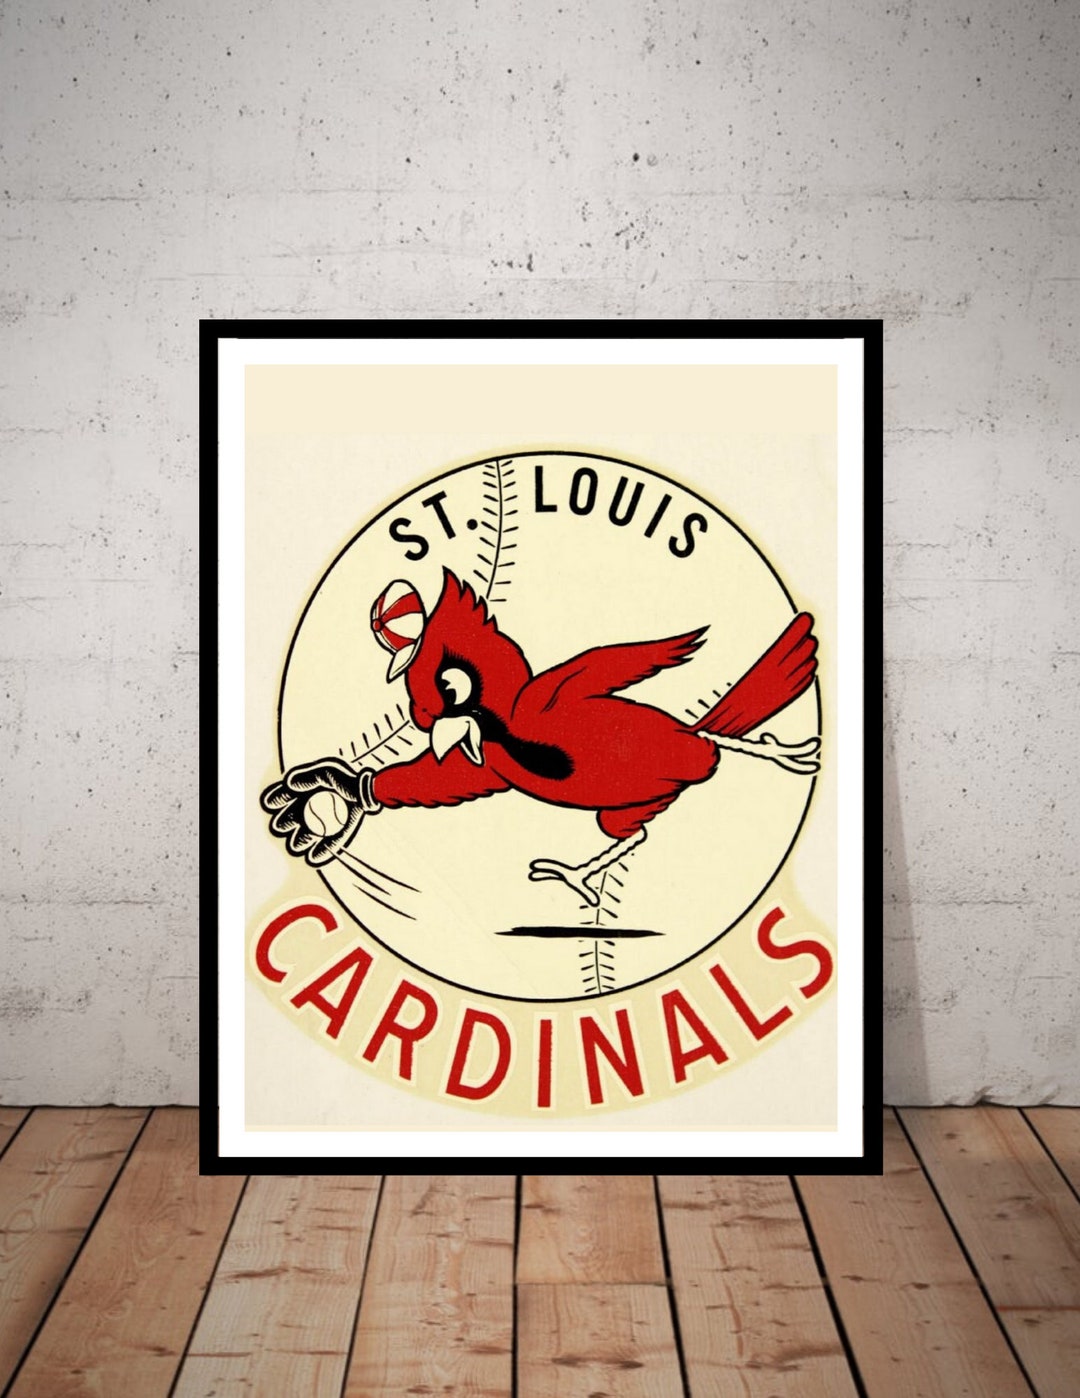 St Louis Cardinals 1953 Program Poster #1, Vintage Memorabilia, Unique Gift